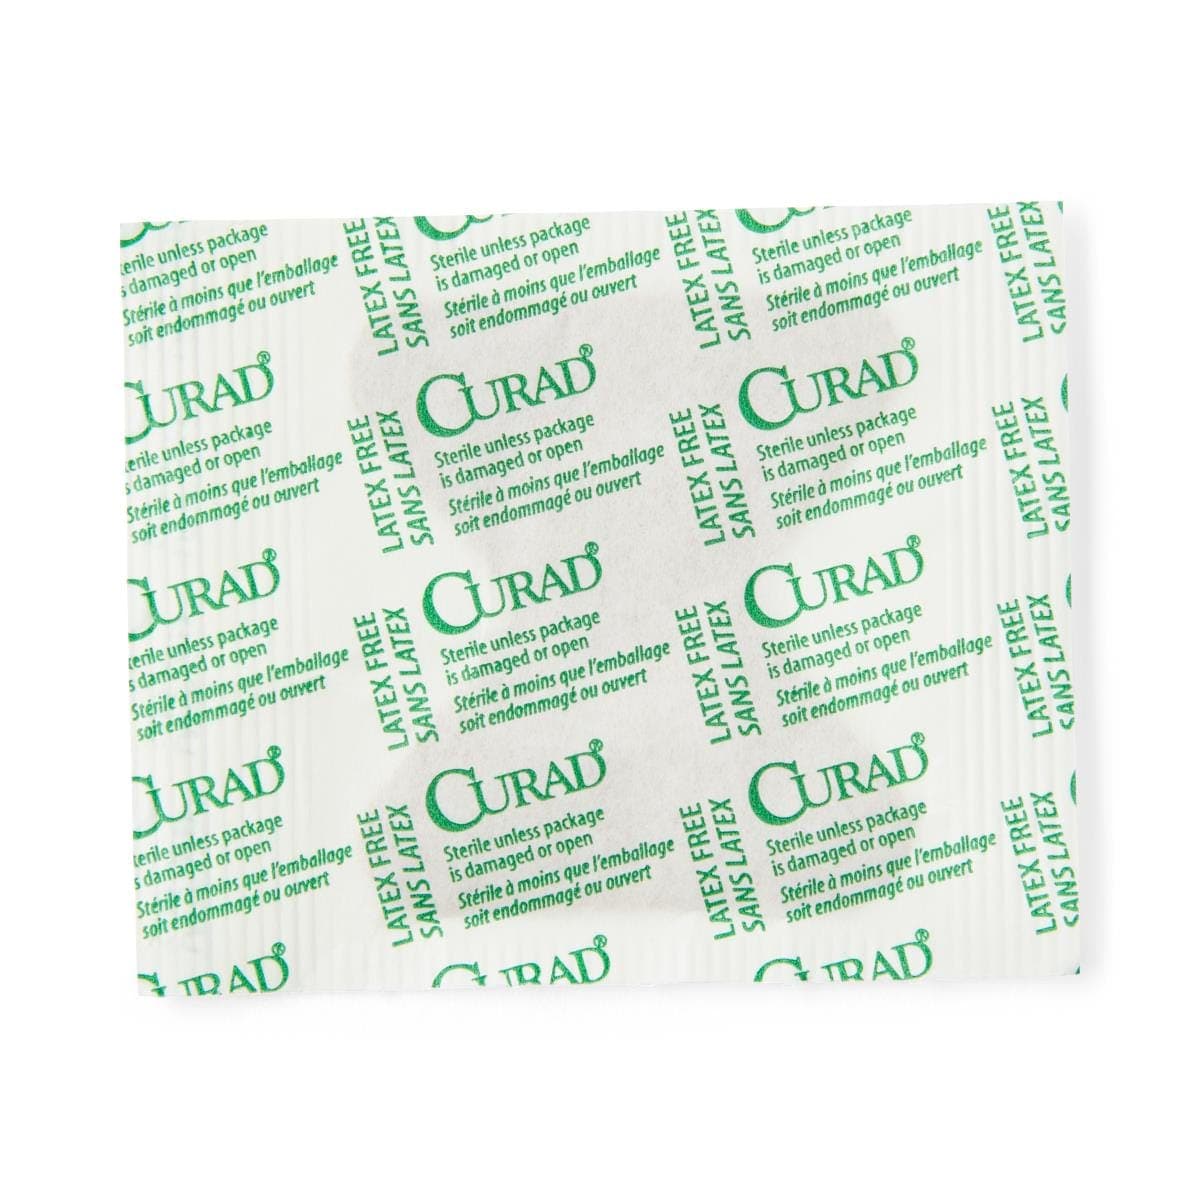 Medline Finger-Tip / Box of 100 Medline CURAD Flex-Fabric Adhesive Bandages